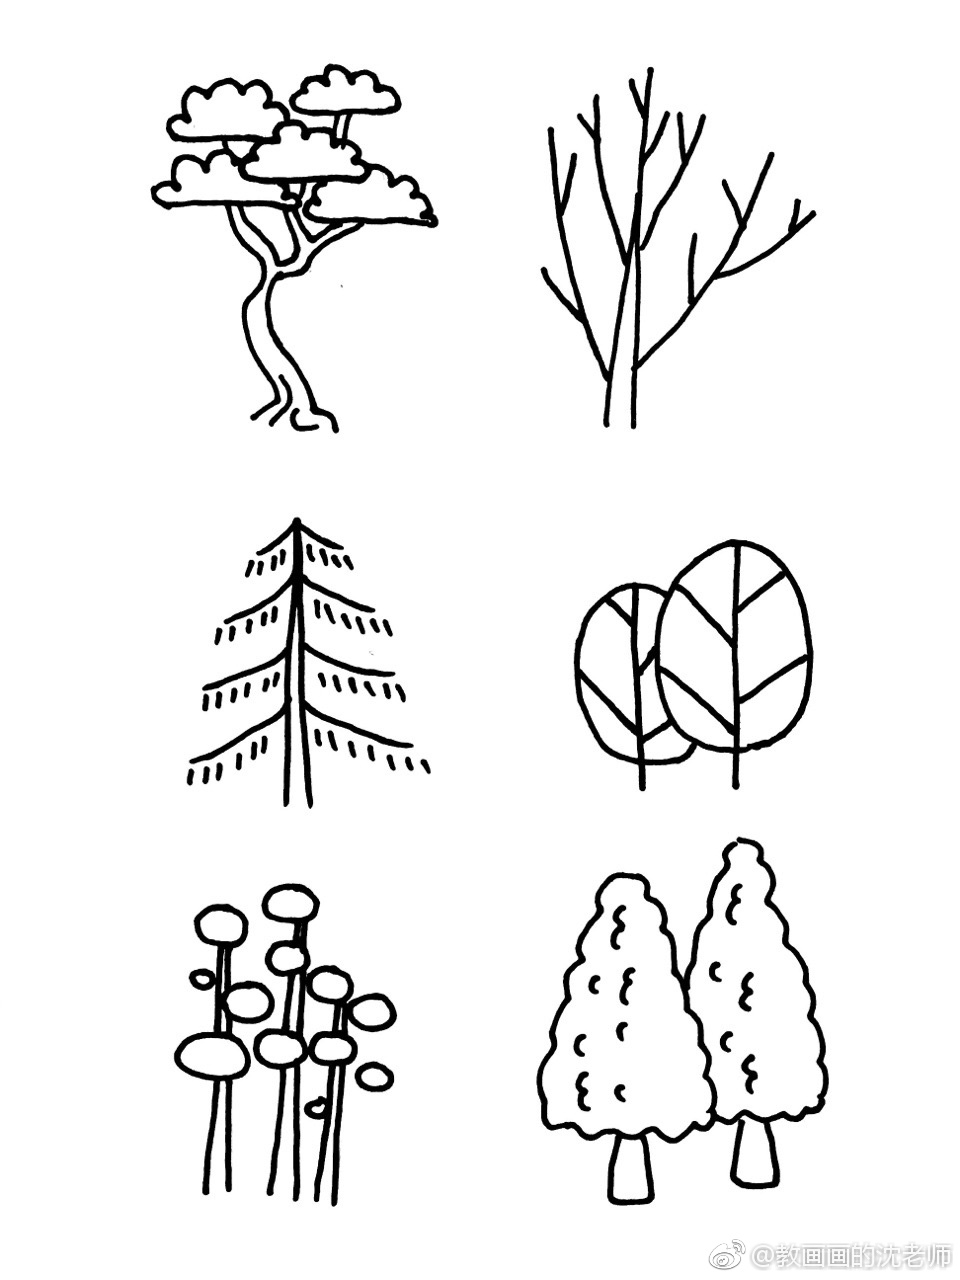 植物树木原创简笔画手绘手帐素材～现在植物很受欢迎哦～ (作者: 教